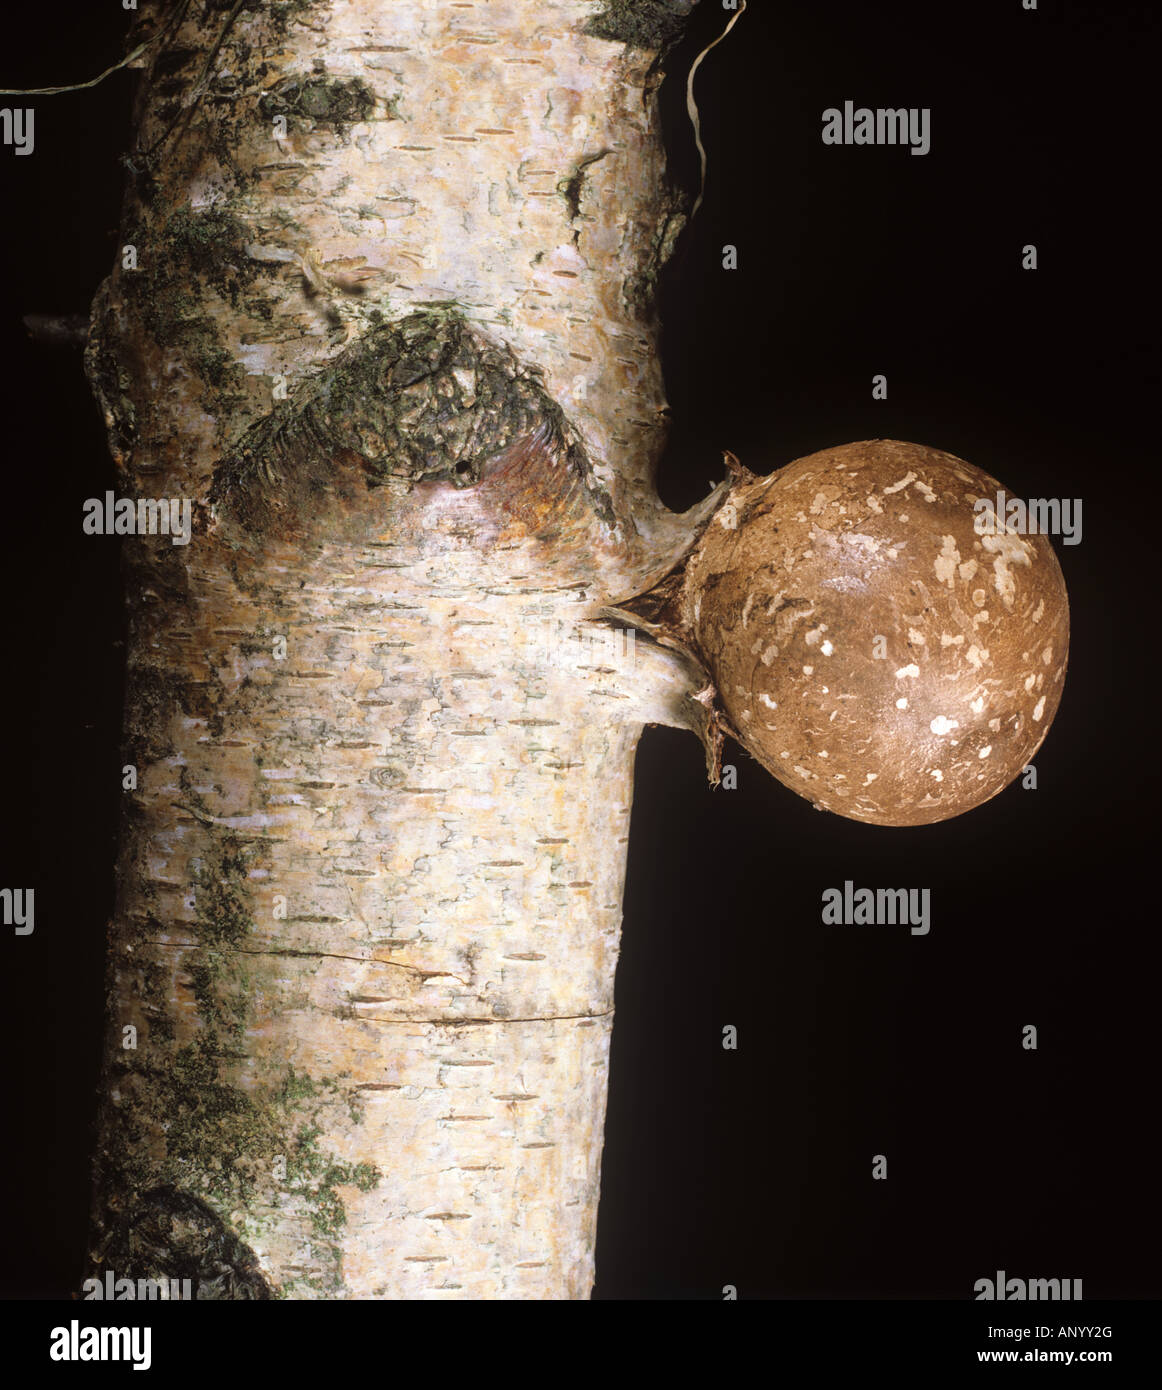 La Betulla patogeno Piptoporus betulinus corpo fruttifero sviluppando su un argento tronco di betulla Foto Stock